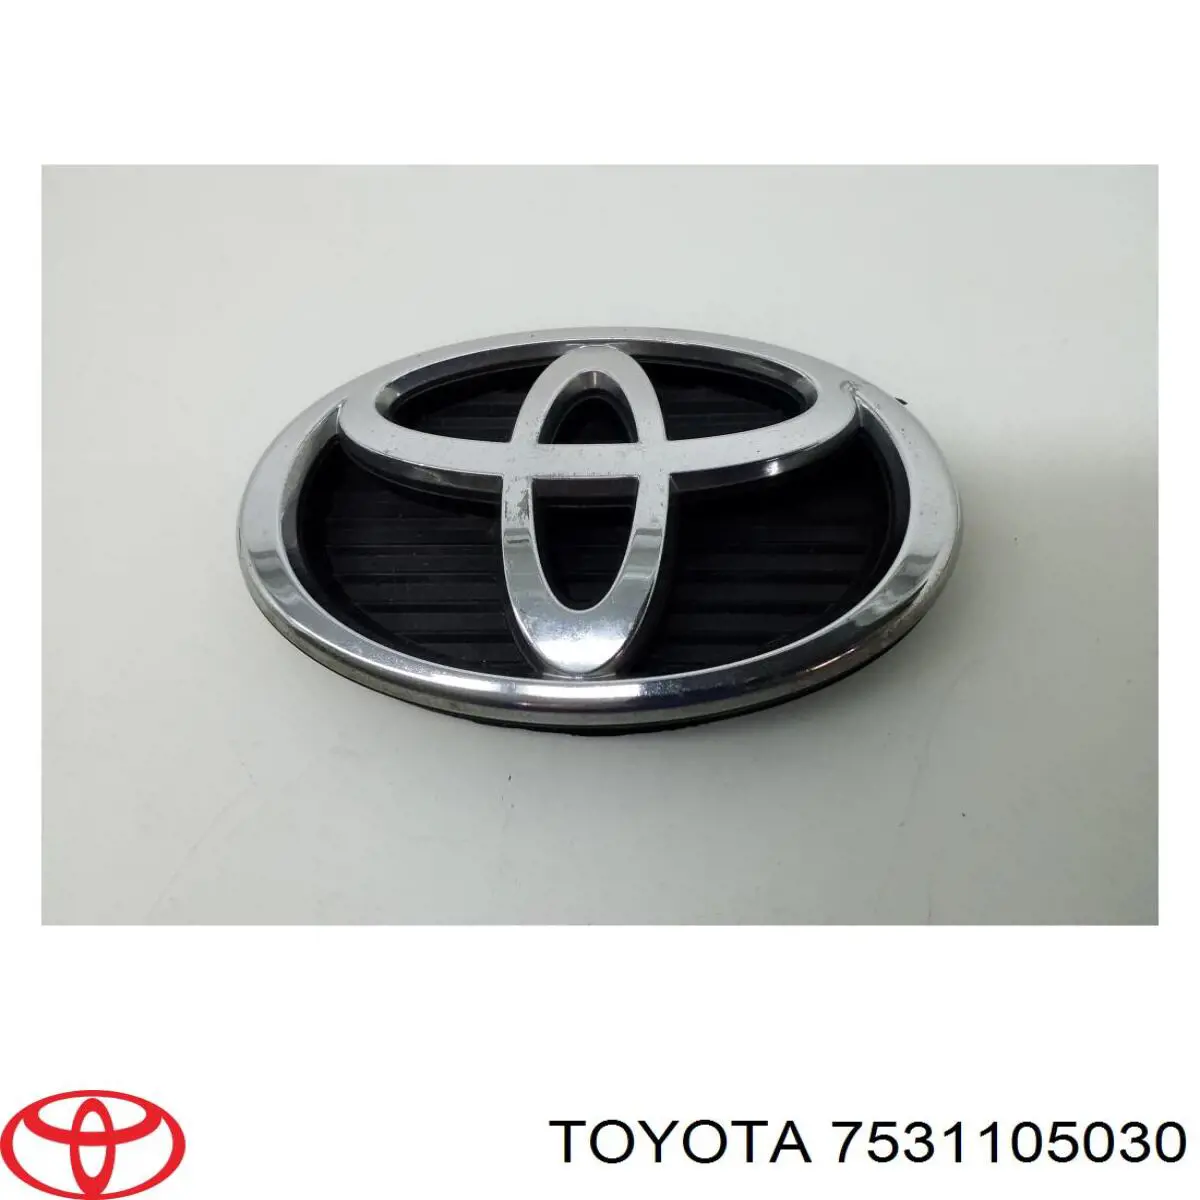 7531105030 Toyota emblema de grelha do radiador